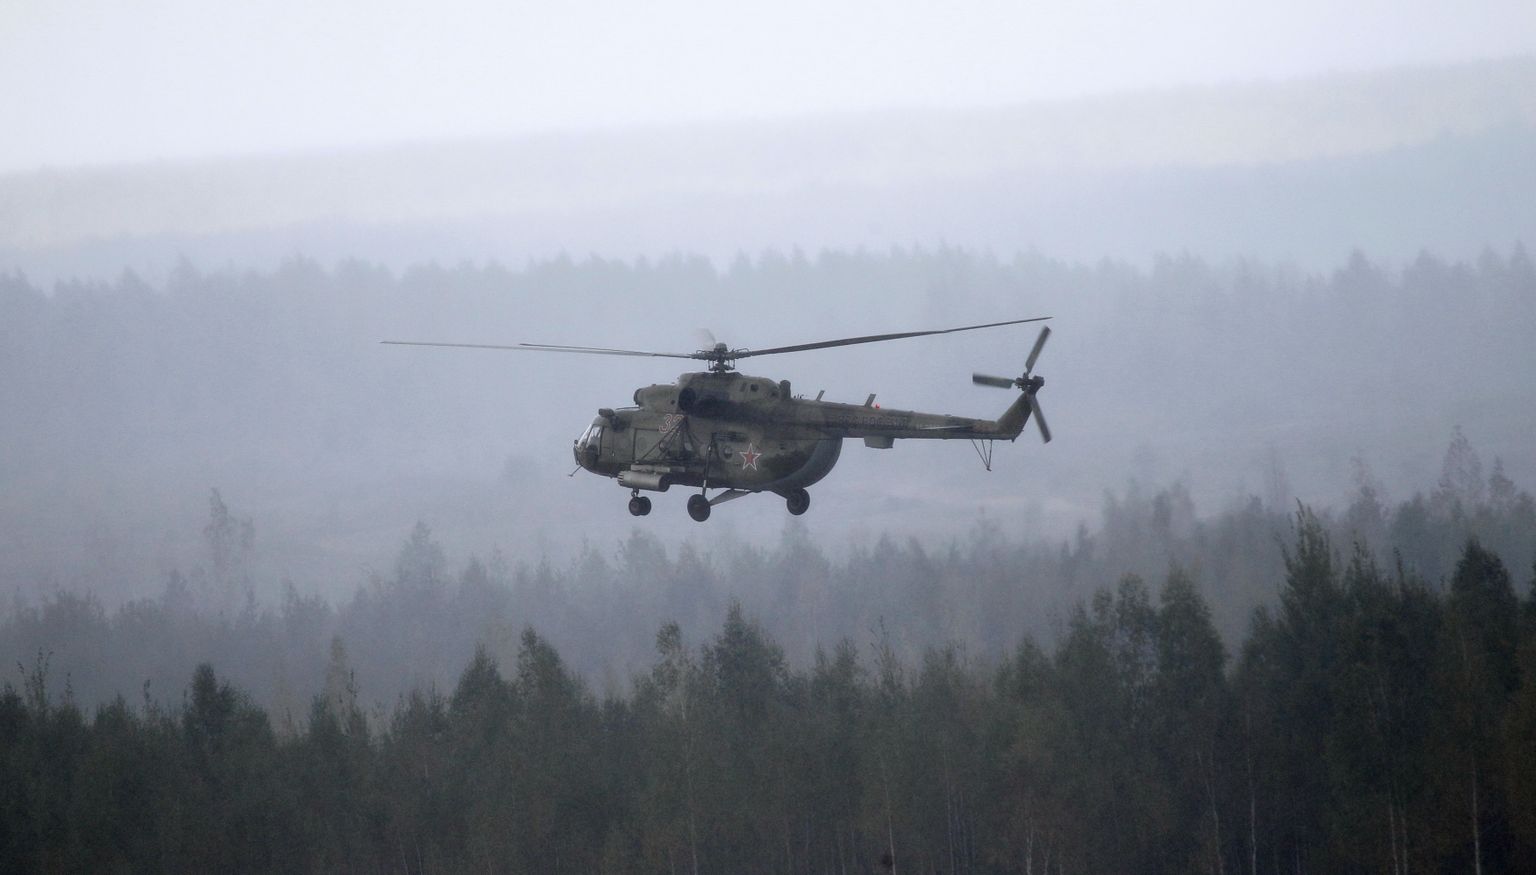 Venemaa piirivalve helikopter MI-8 rikkus laupäeval, 18. juunil Kagu.Eestis õhupiiri.